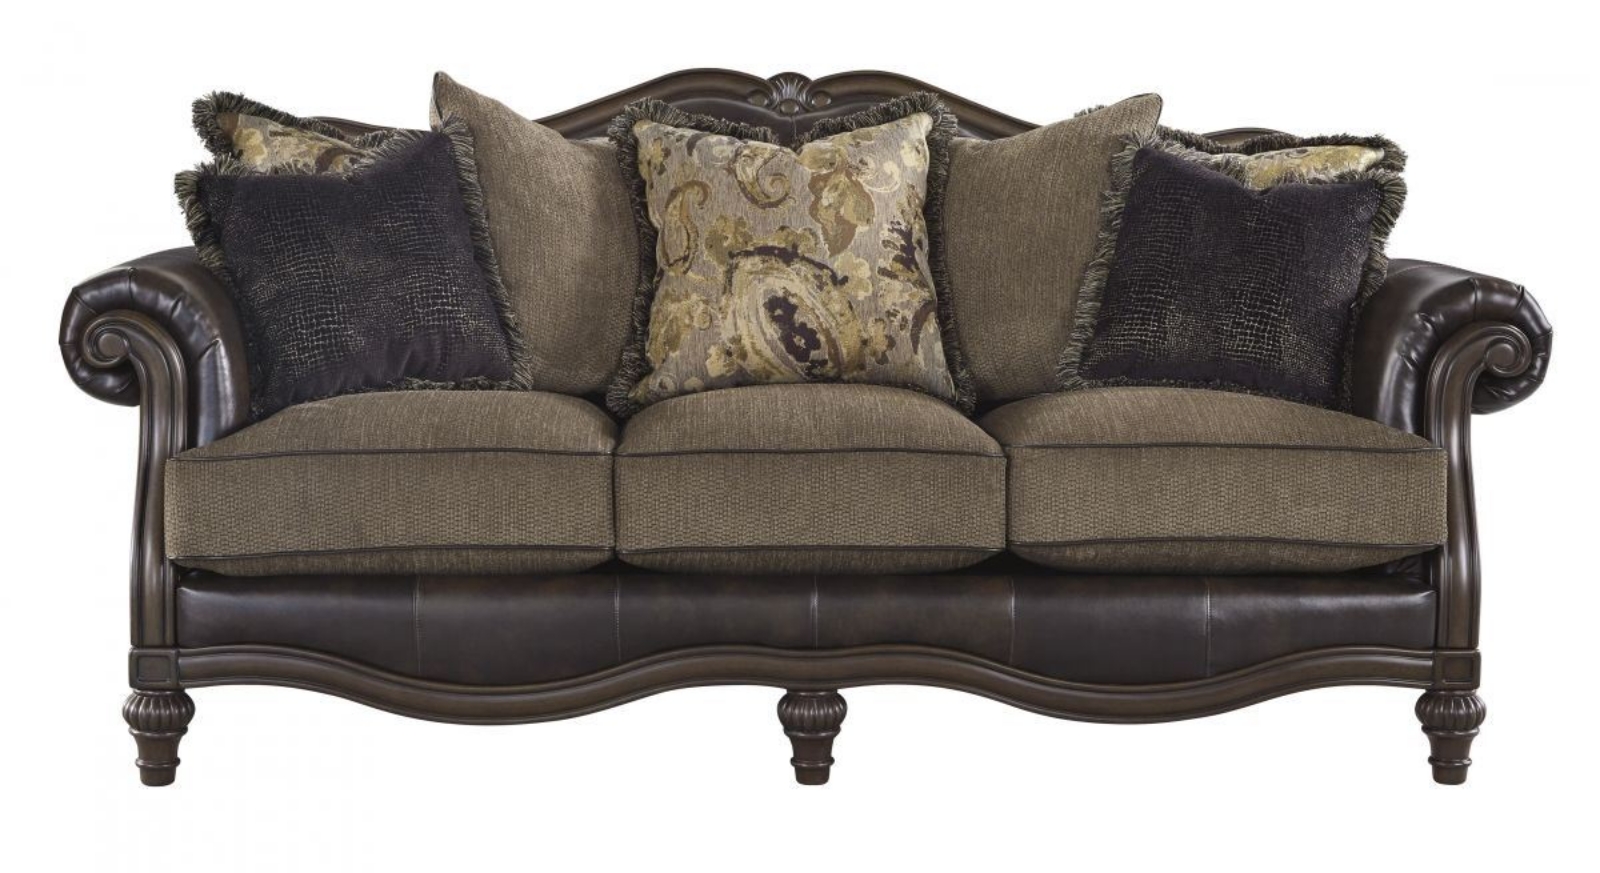 Picture of Winnsboro Sofa